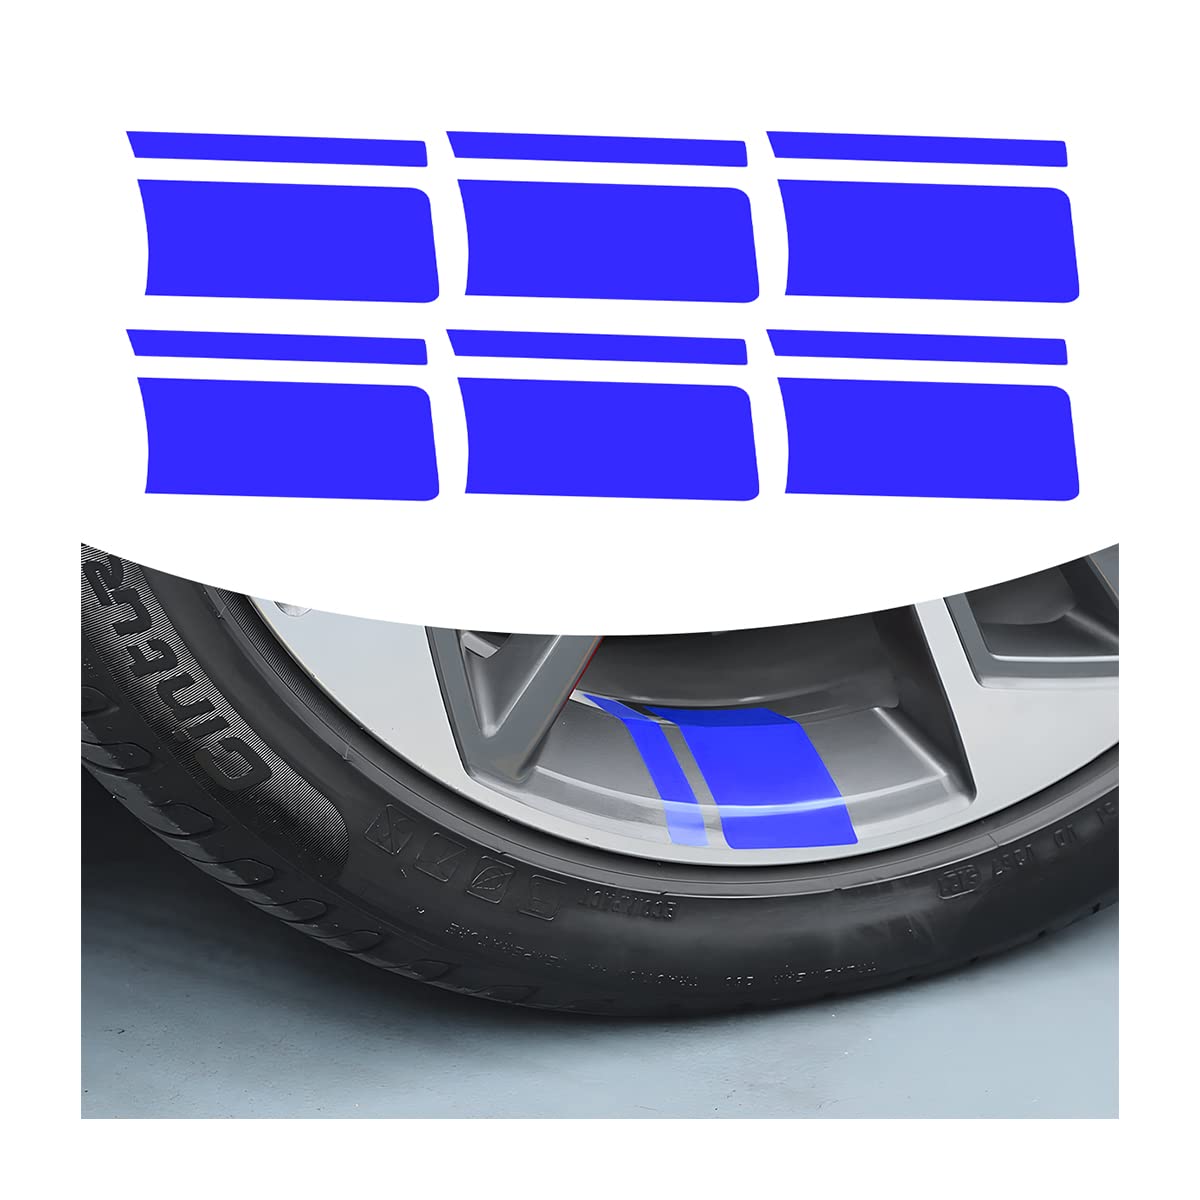 CGEAMDY 6 Stück Autorad Reflektierende Aufkleber, Auto Styling Auto Reifen Felge Dekoration Zubehör, Auto Selbstklebende Aufkleber DIY Motorrad Rad Aufkleber(Blau) von CGEAMDY